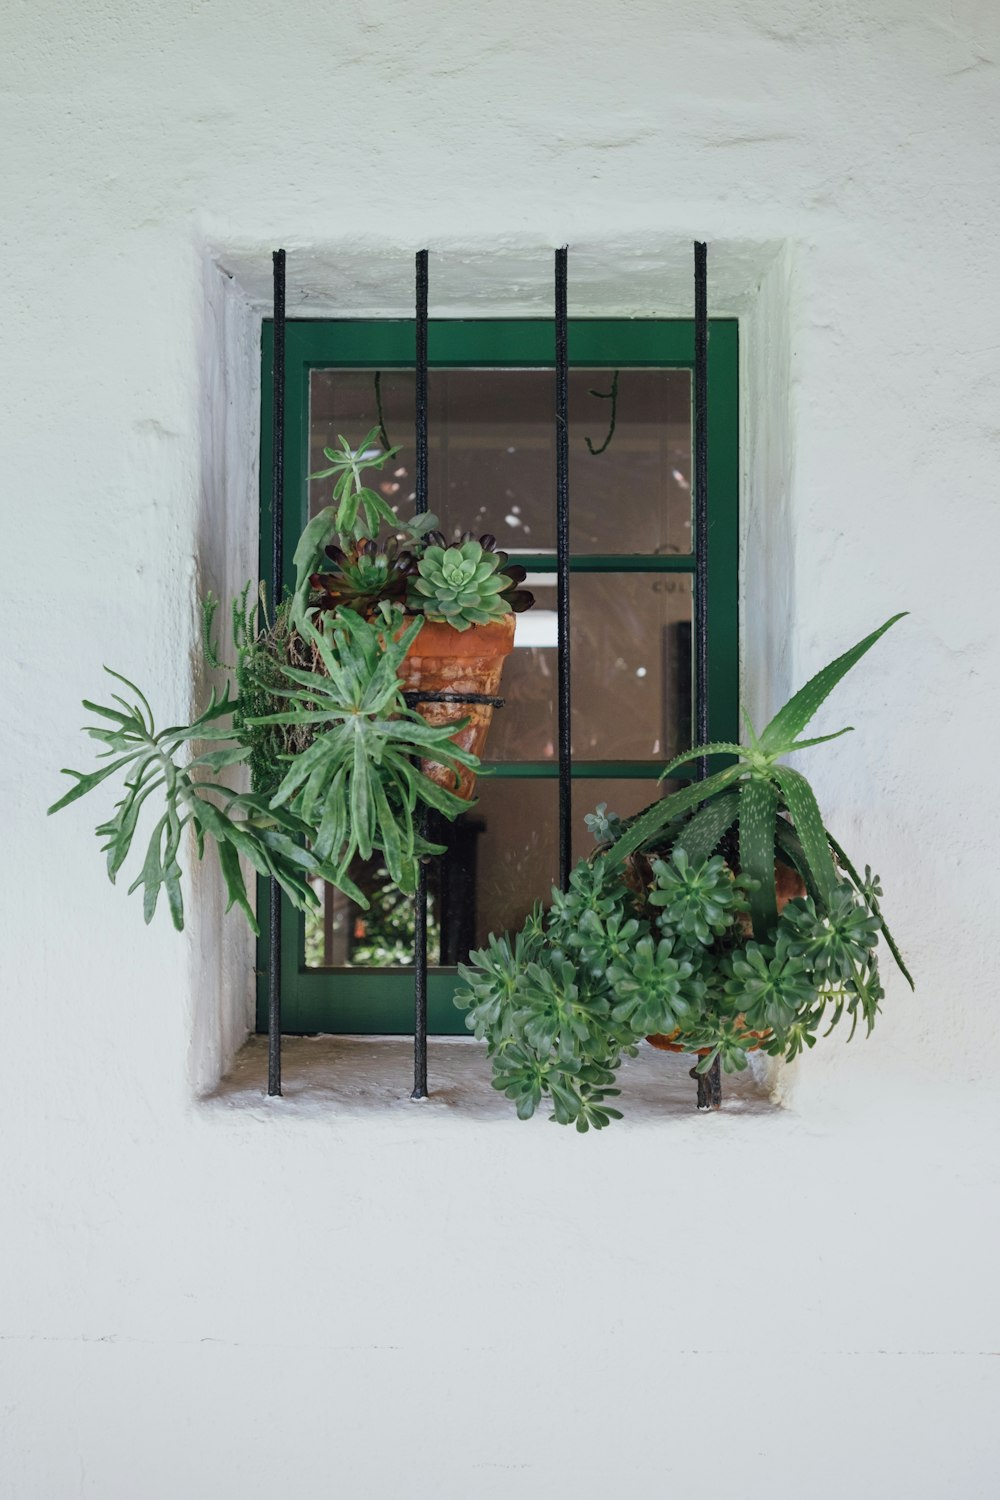 Hängende Pflanzen an grünem Fenster mit Metallrahmen